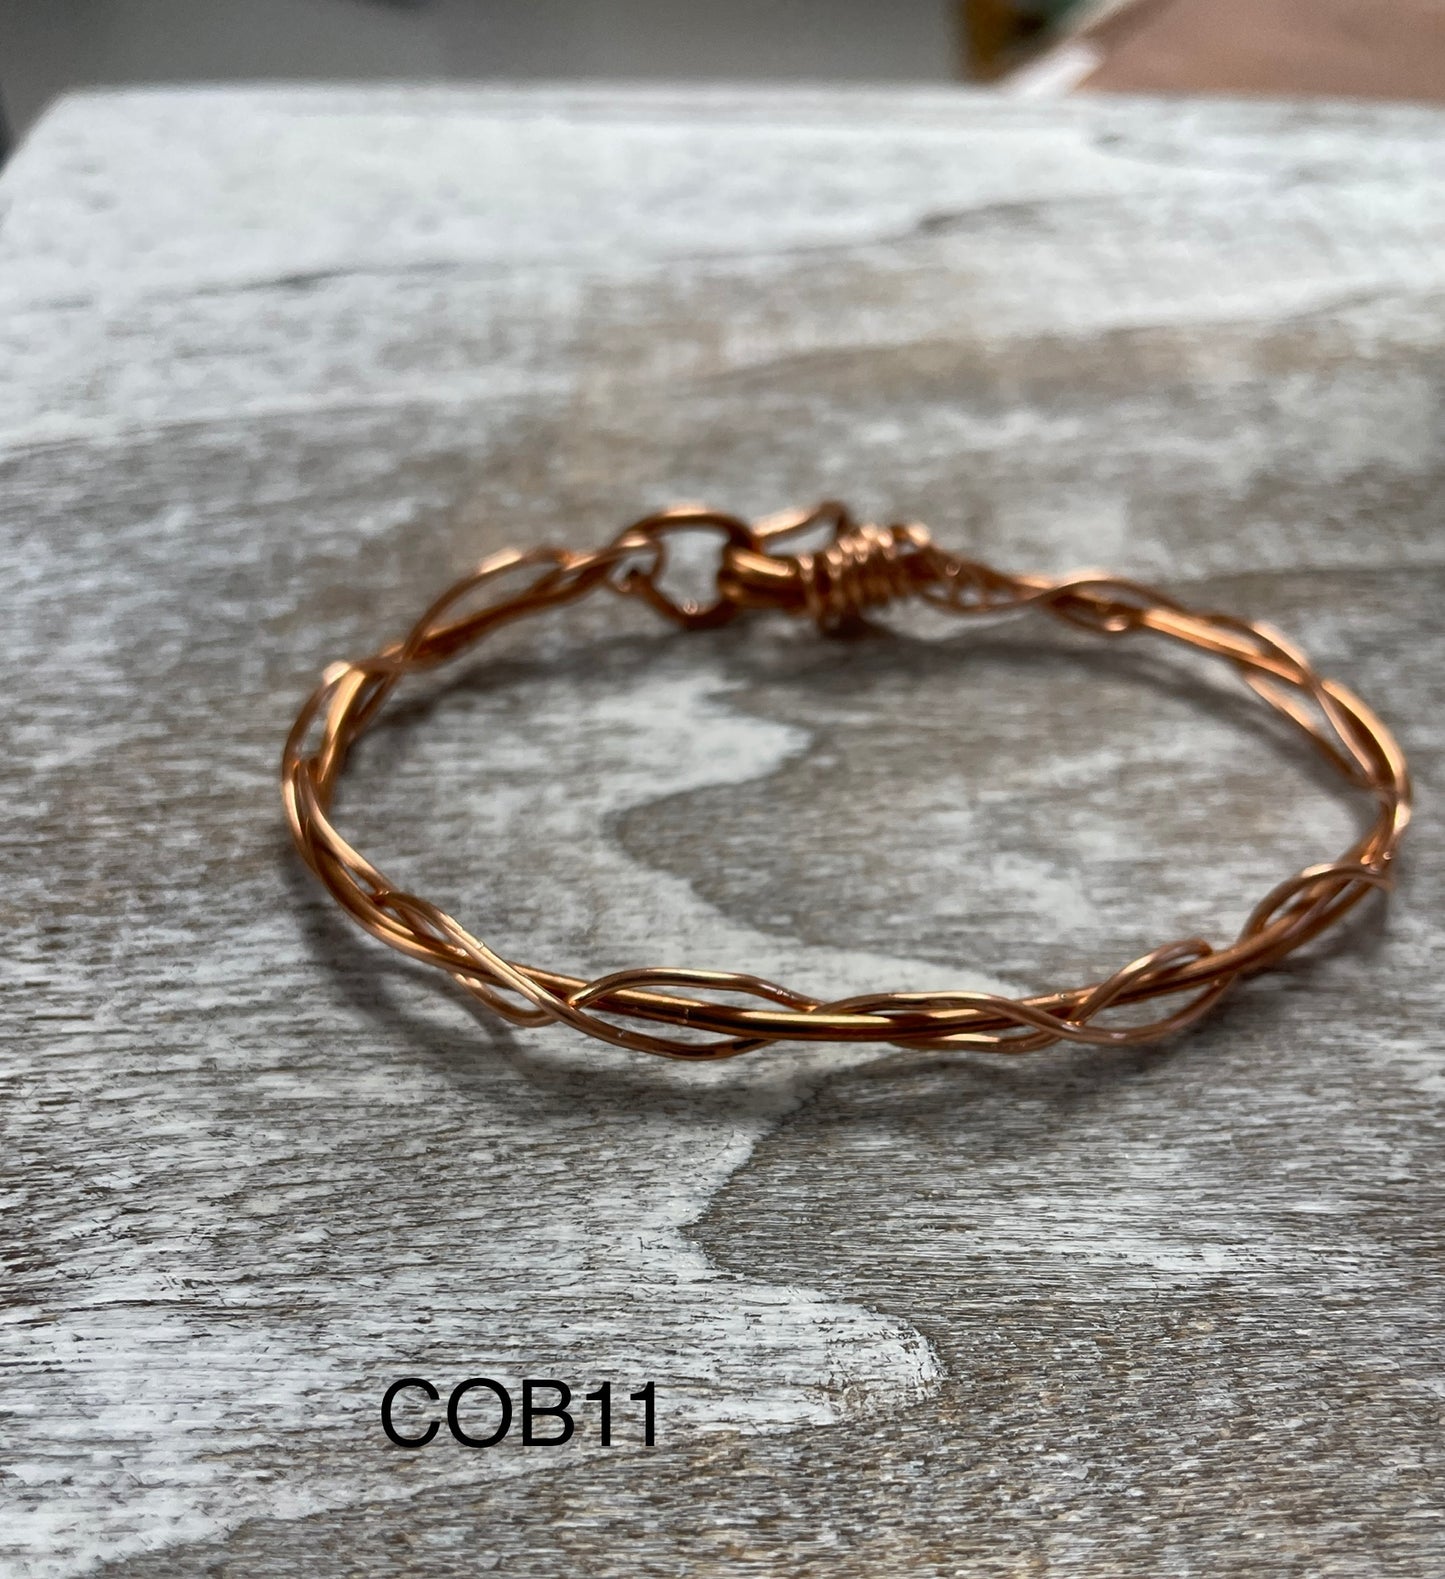 Copper Braided Bracelet